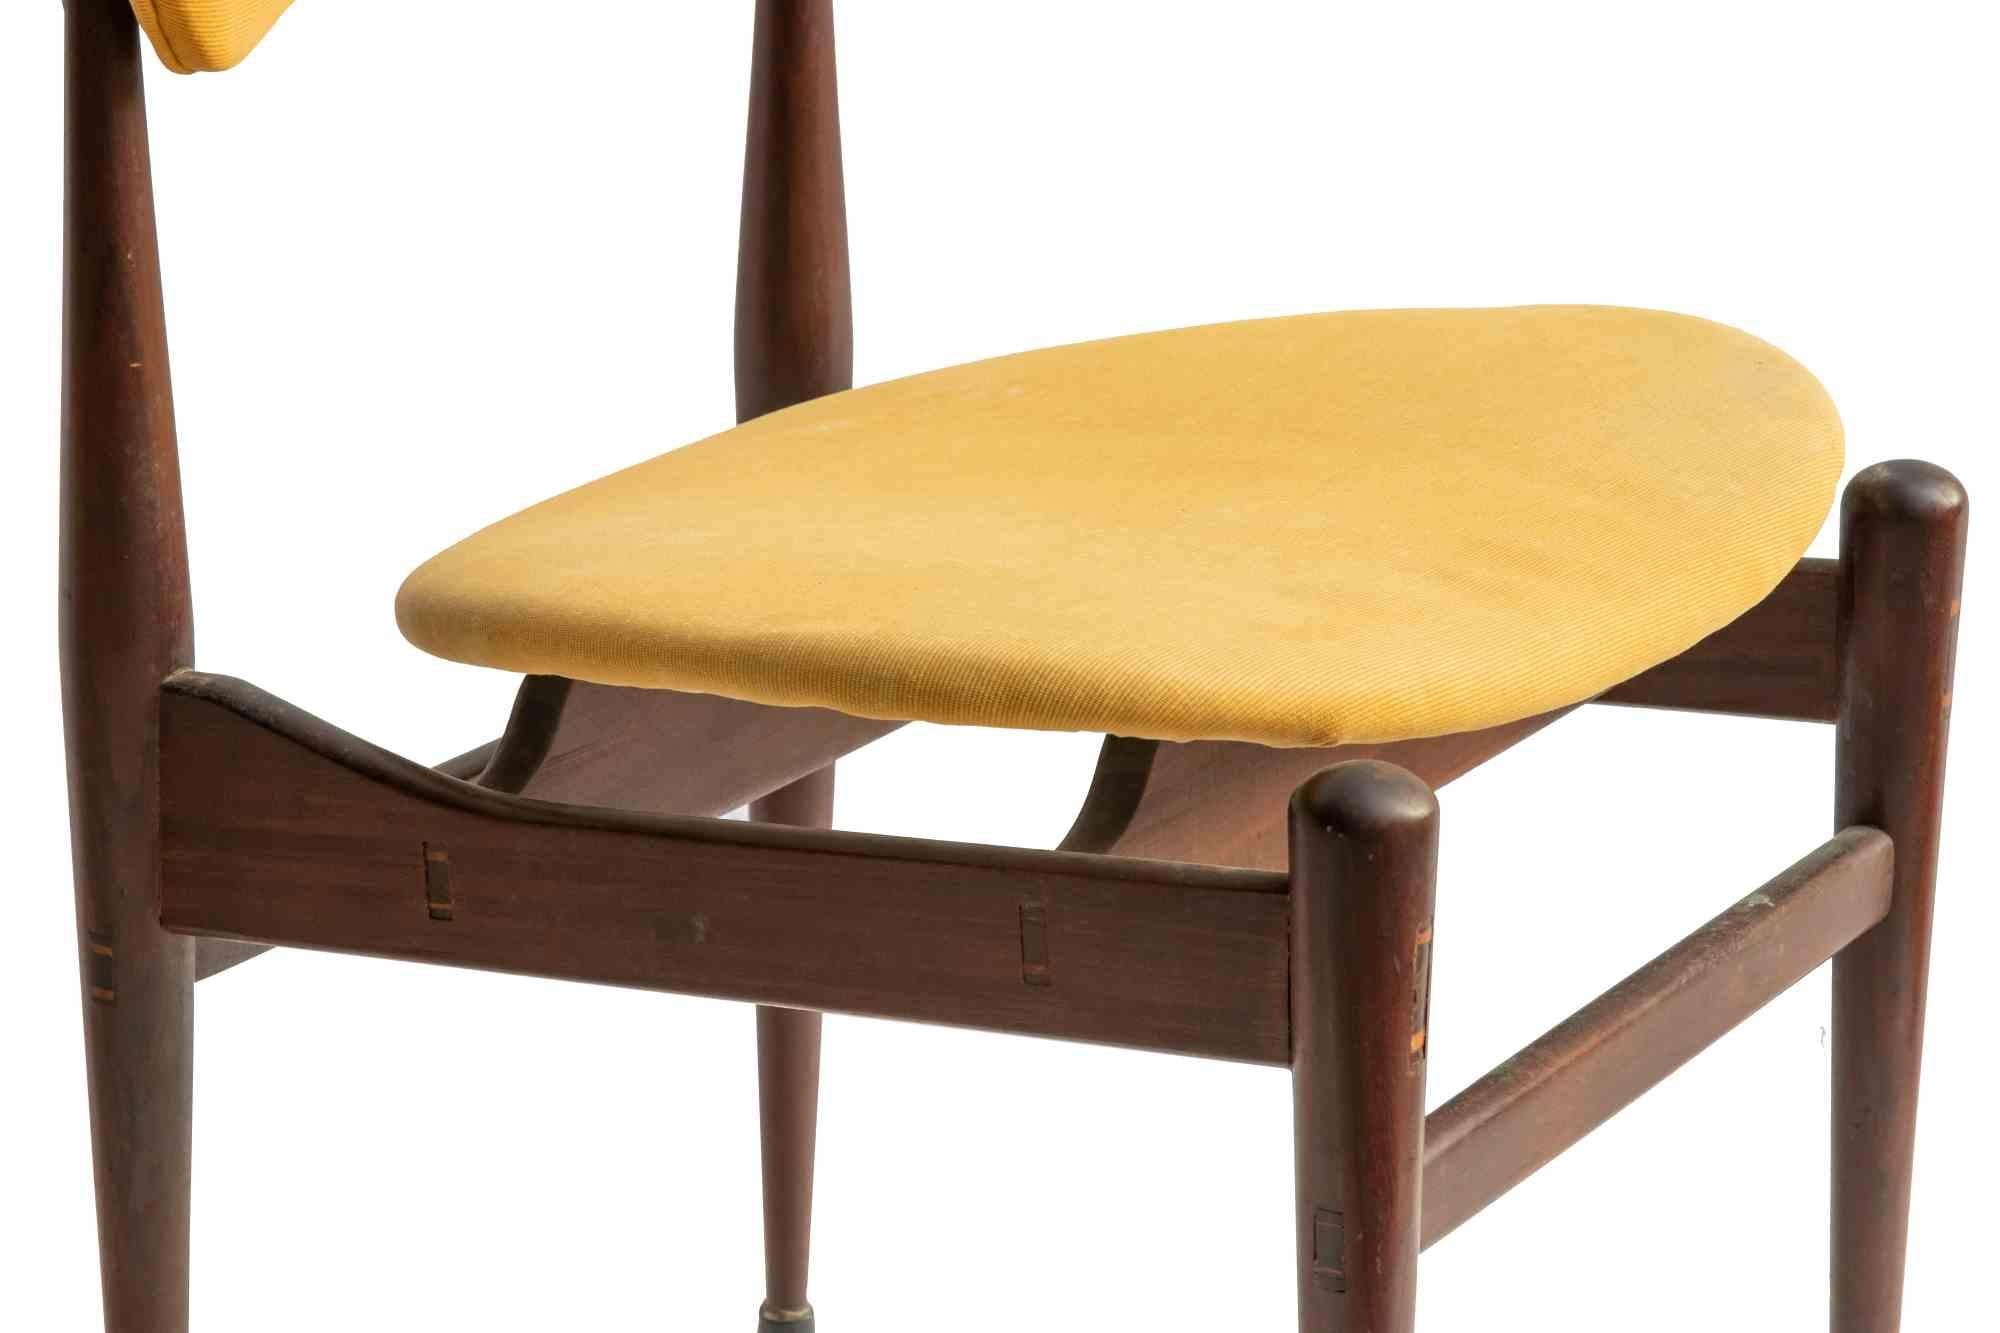 Les chaises Butterfly sont un élément de design original réalisé par Inge et Luciano Rubino dans les années 1960.

Les chaises Butterfly (ou modèle 329) ont été produites par Soro Stolefabrik.

Tissu jaune et structure en bois

Ne manquez pas une